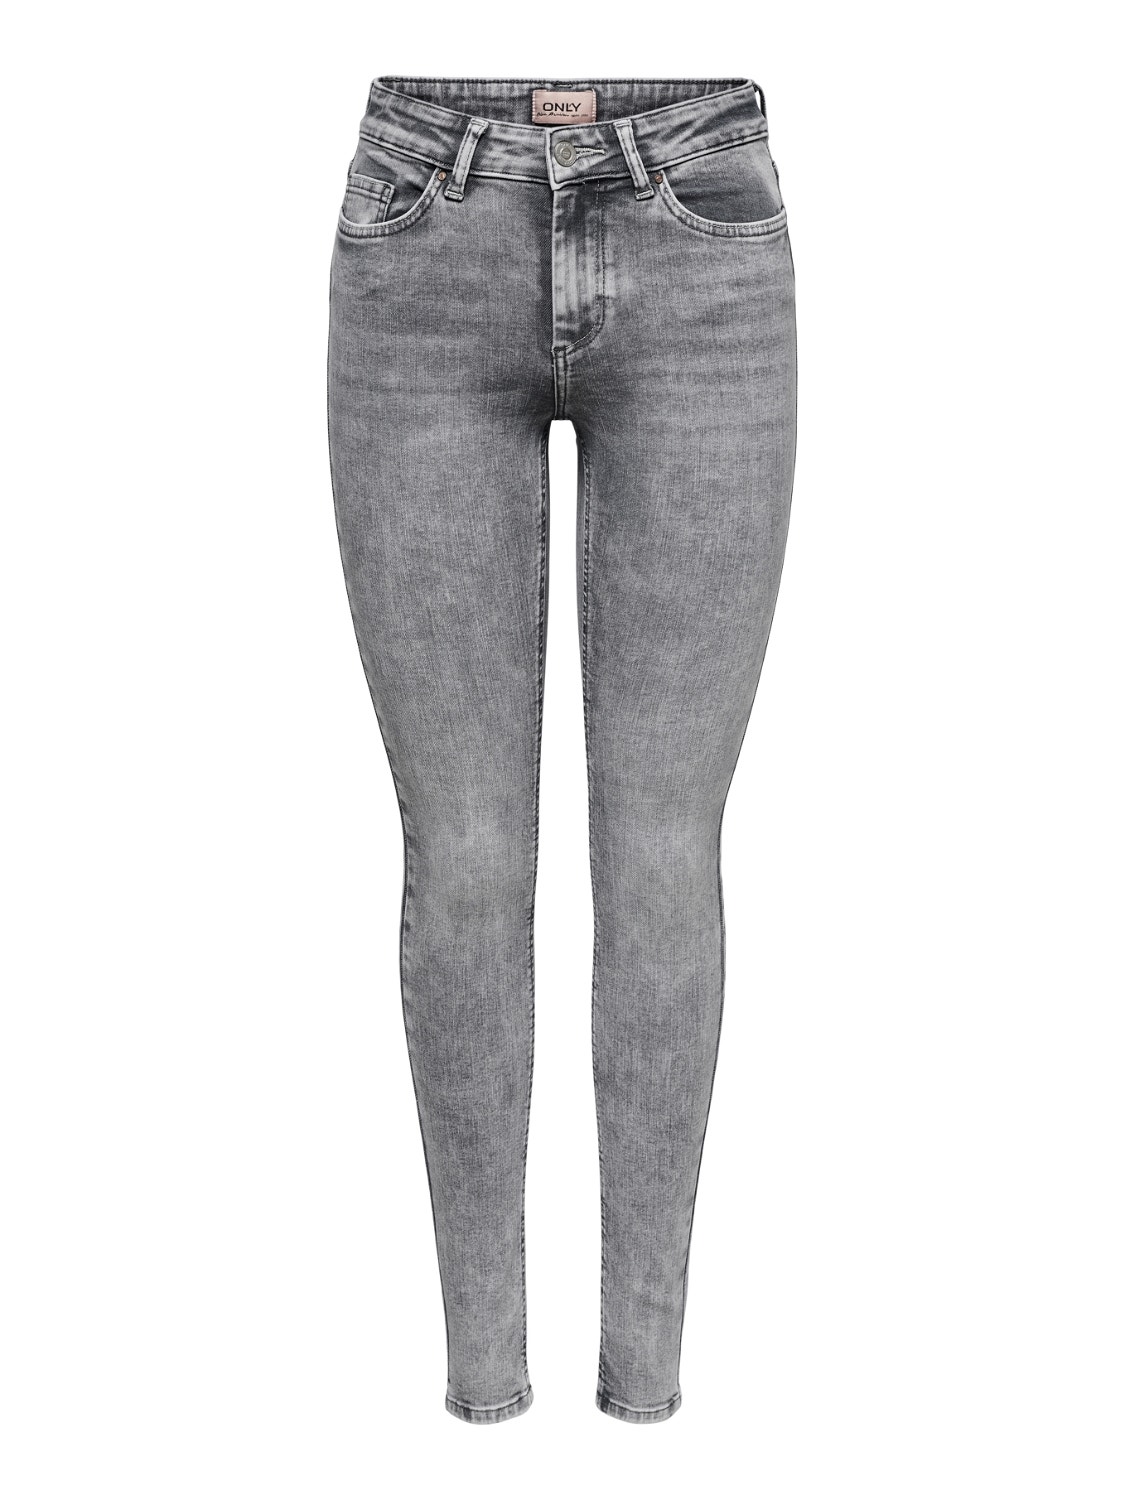  Grey Skinny Jeans